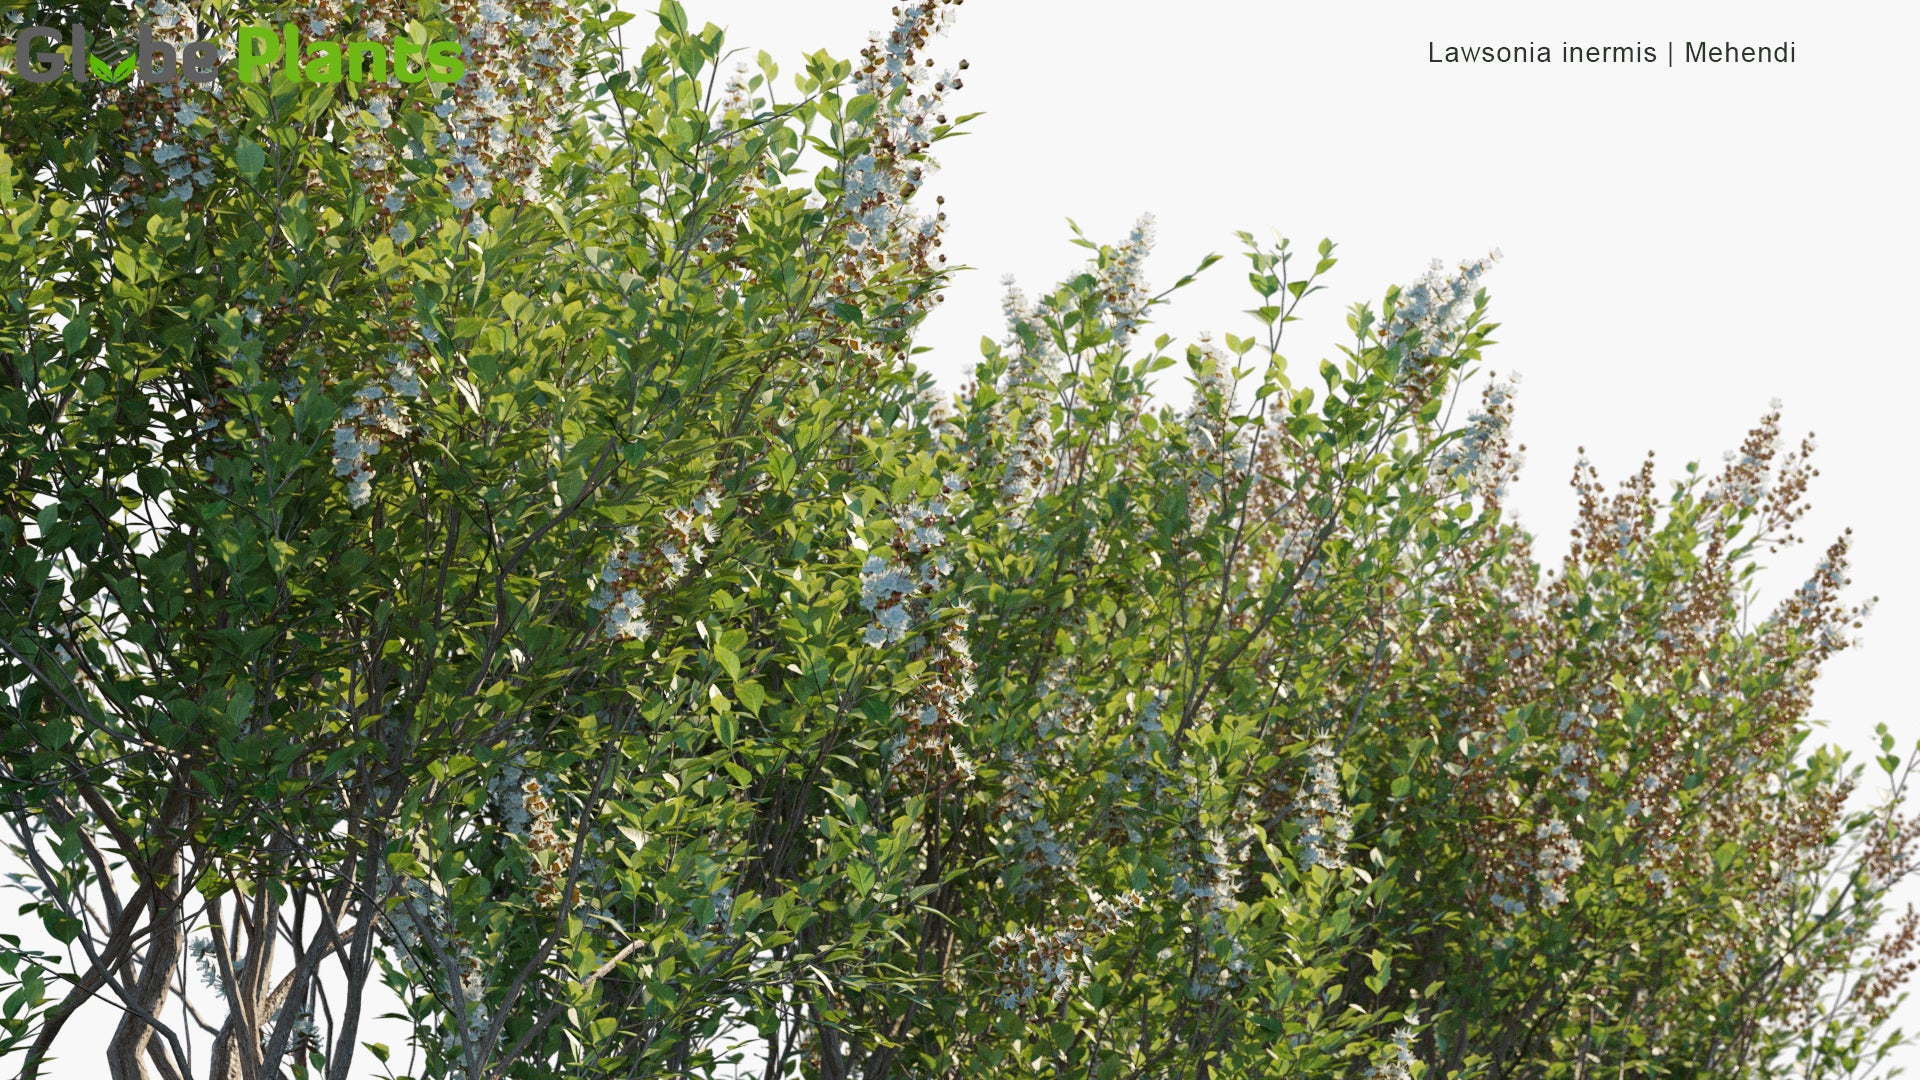 Lawsonia Inermis - Mehendi, Hina, Henna Tree, Mignonette Tree, Egyptian Privet